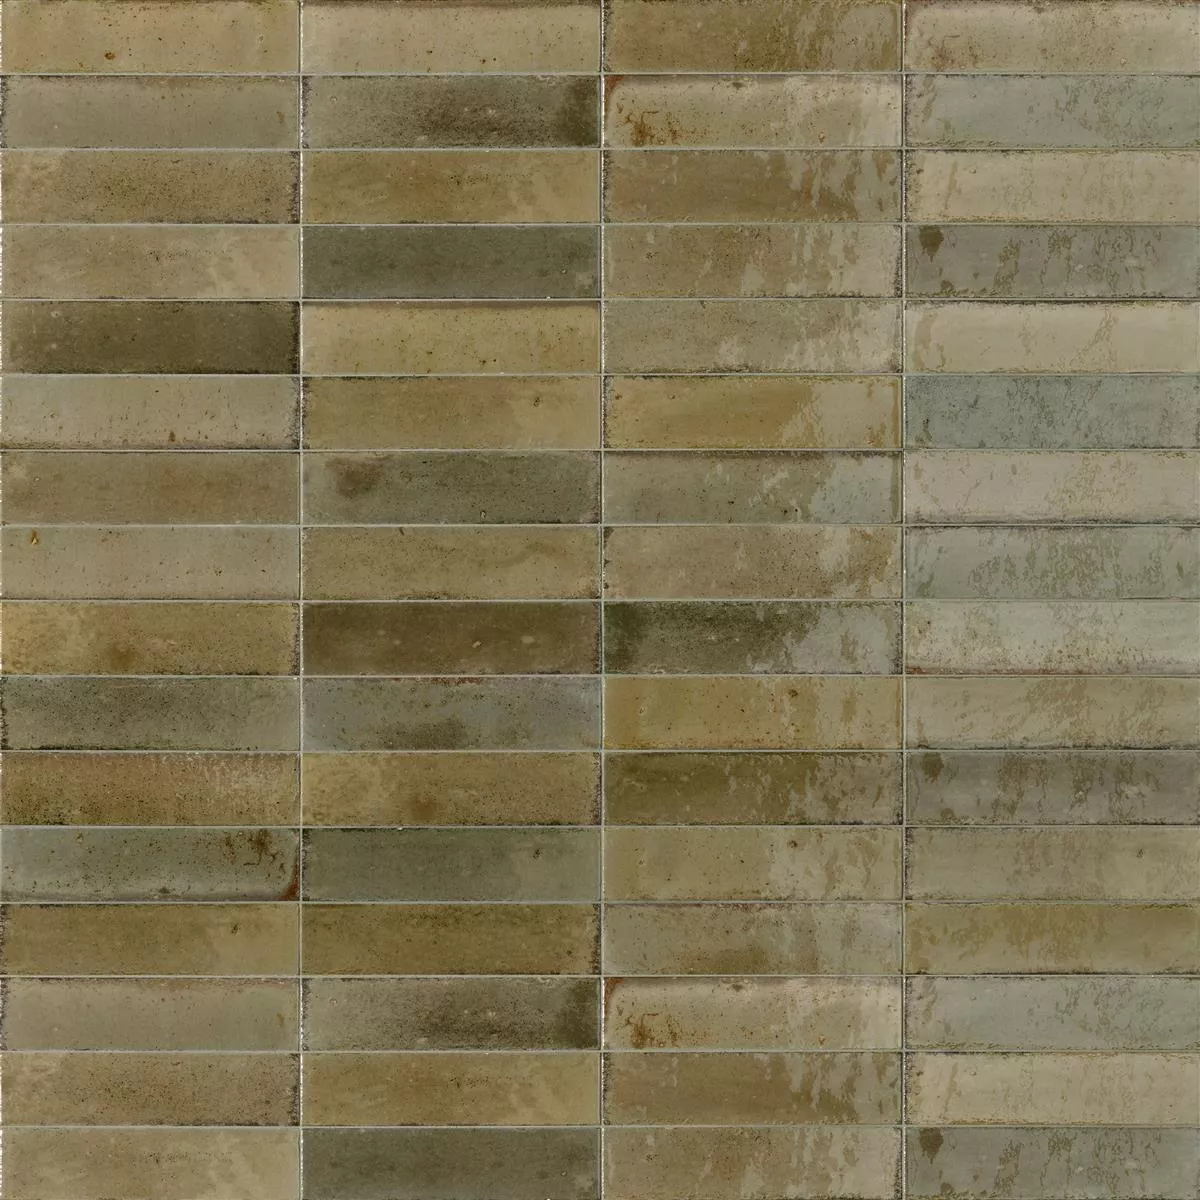 Sample Wall Tiles Laguna Glossy Waved Beige 6x24cm